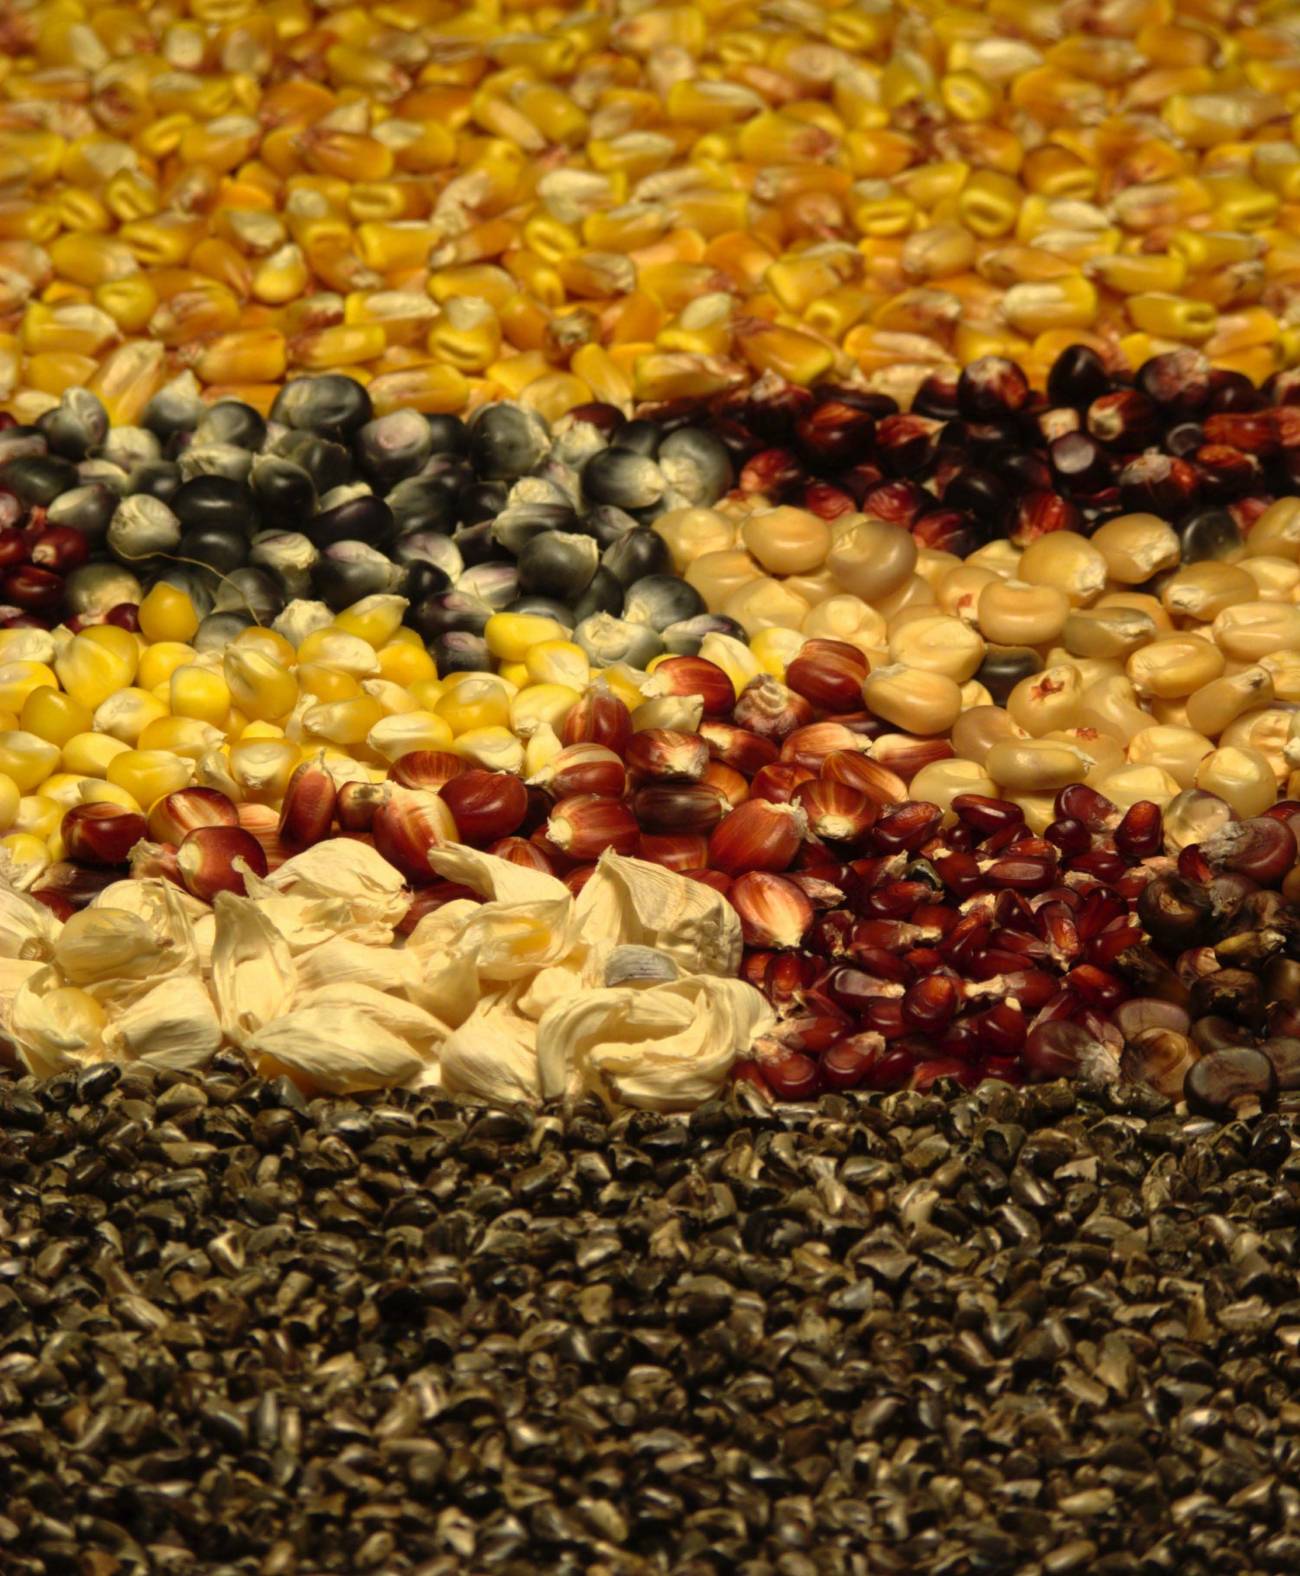 Semillas de maíz silvestre, criollo y domesticado. Se ve la evolución ha seleccionado la uniformidad de las semillas.